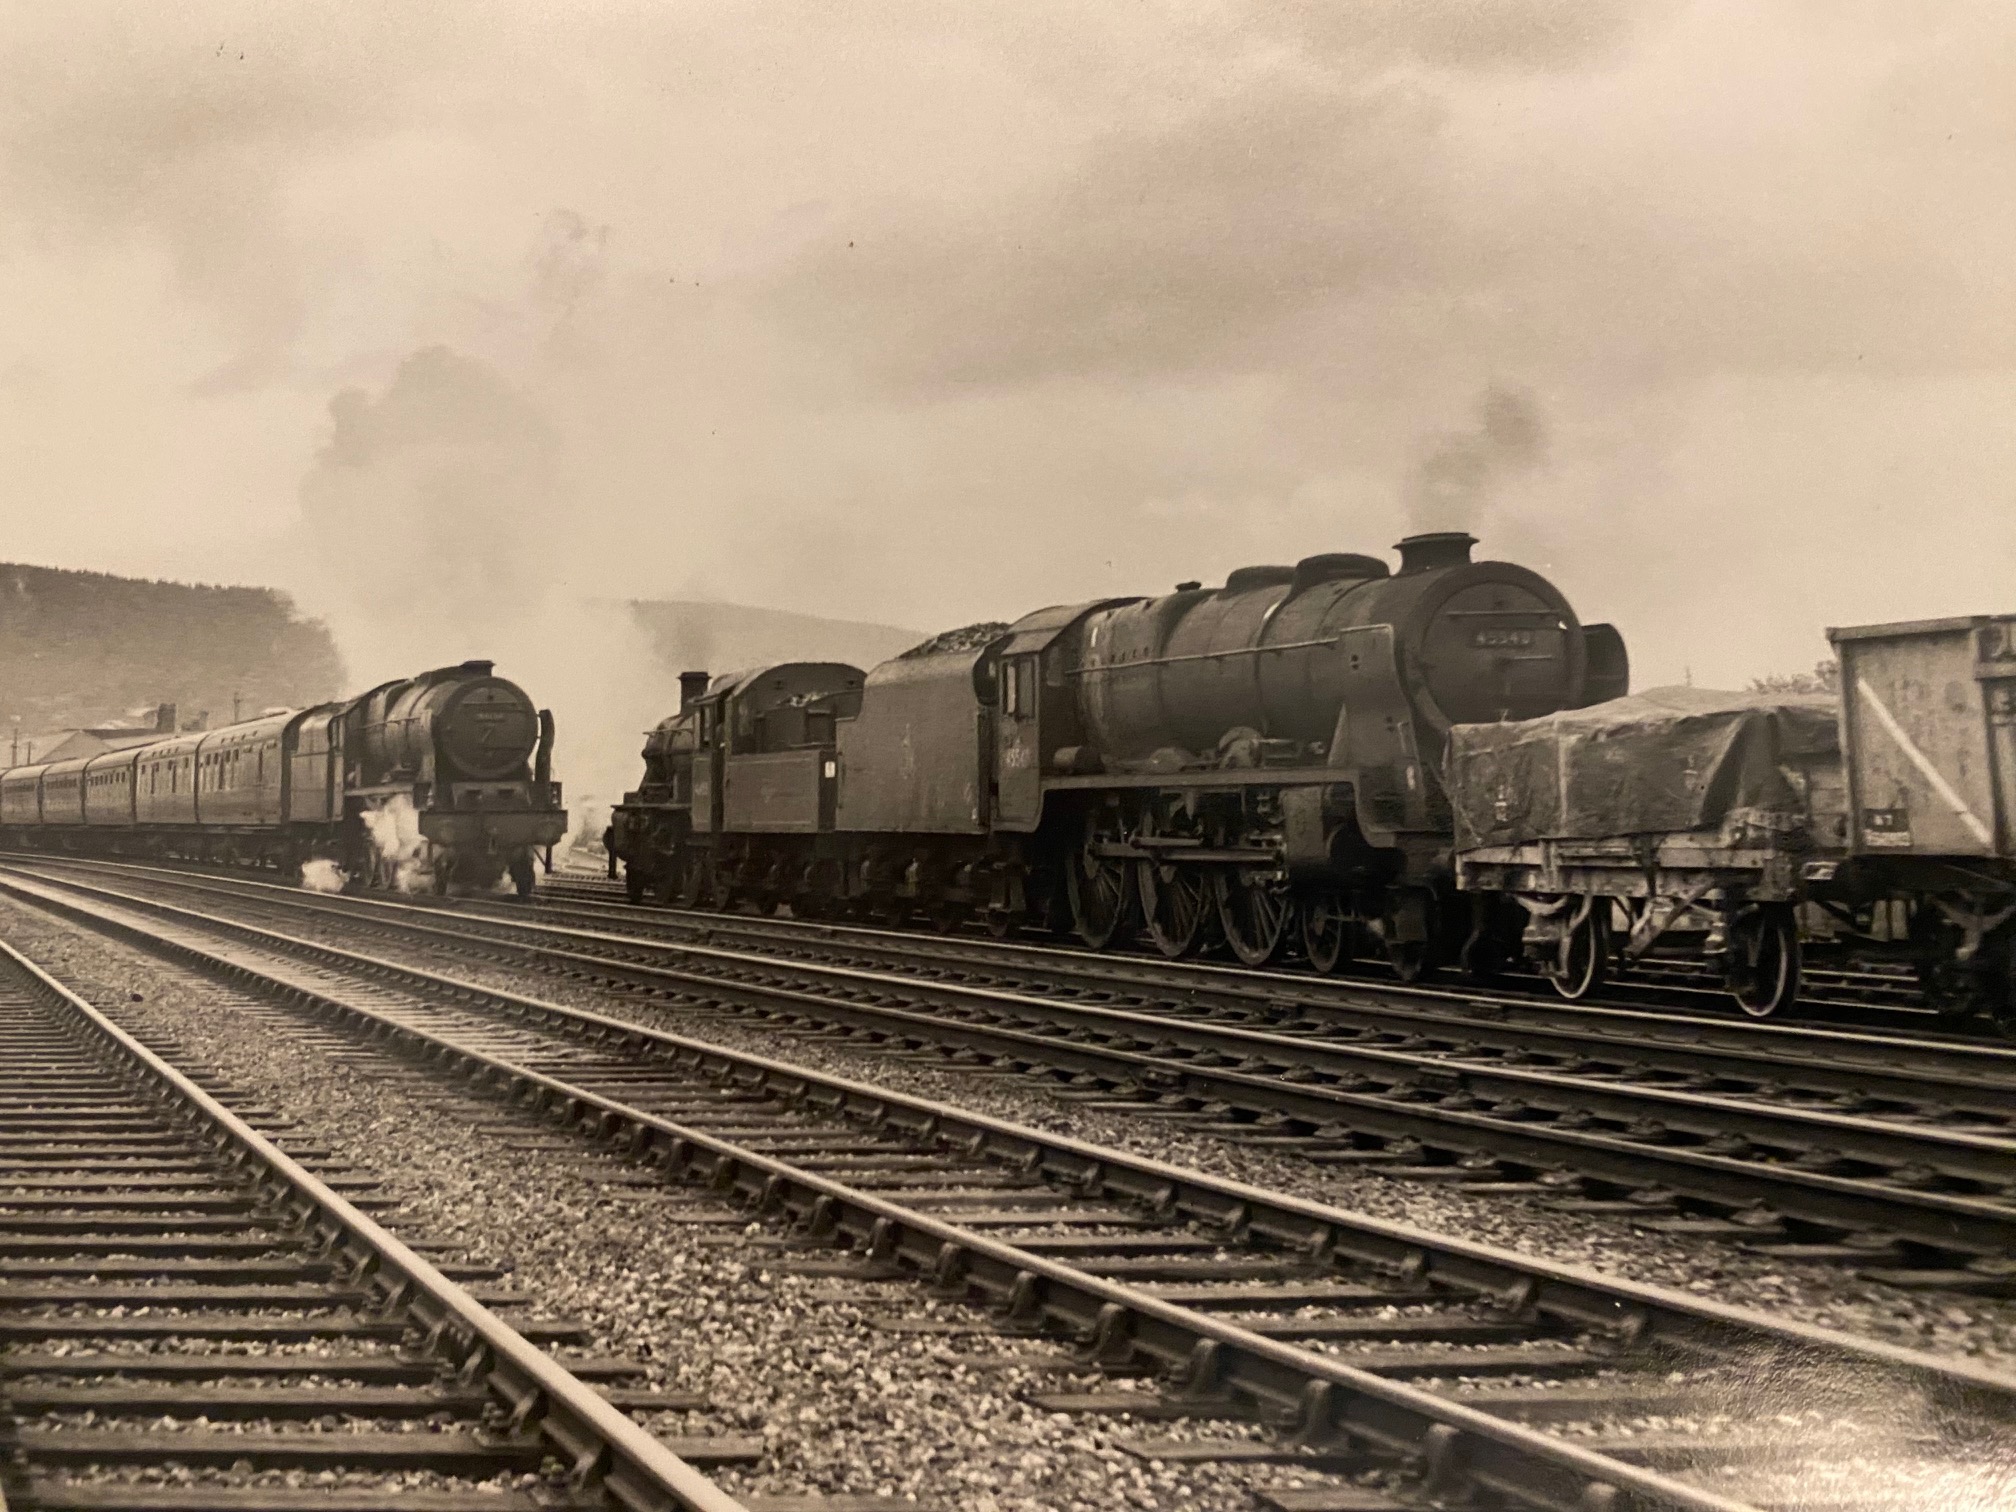 A busy steam era scene at Penrith.